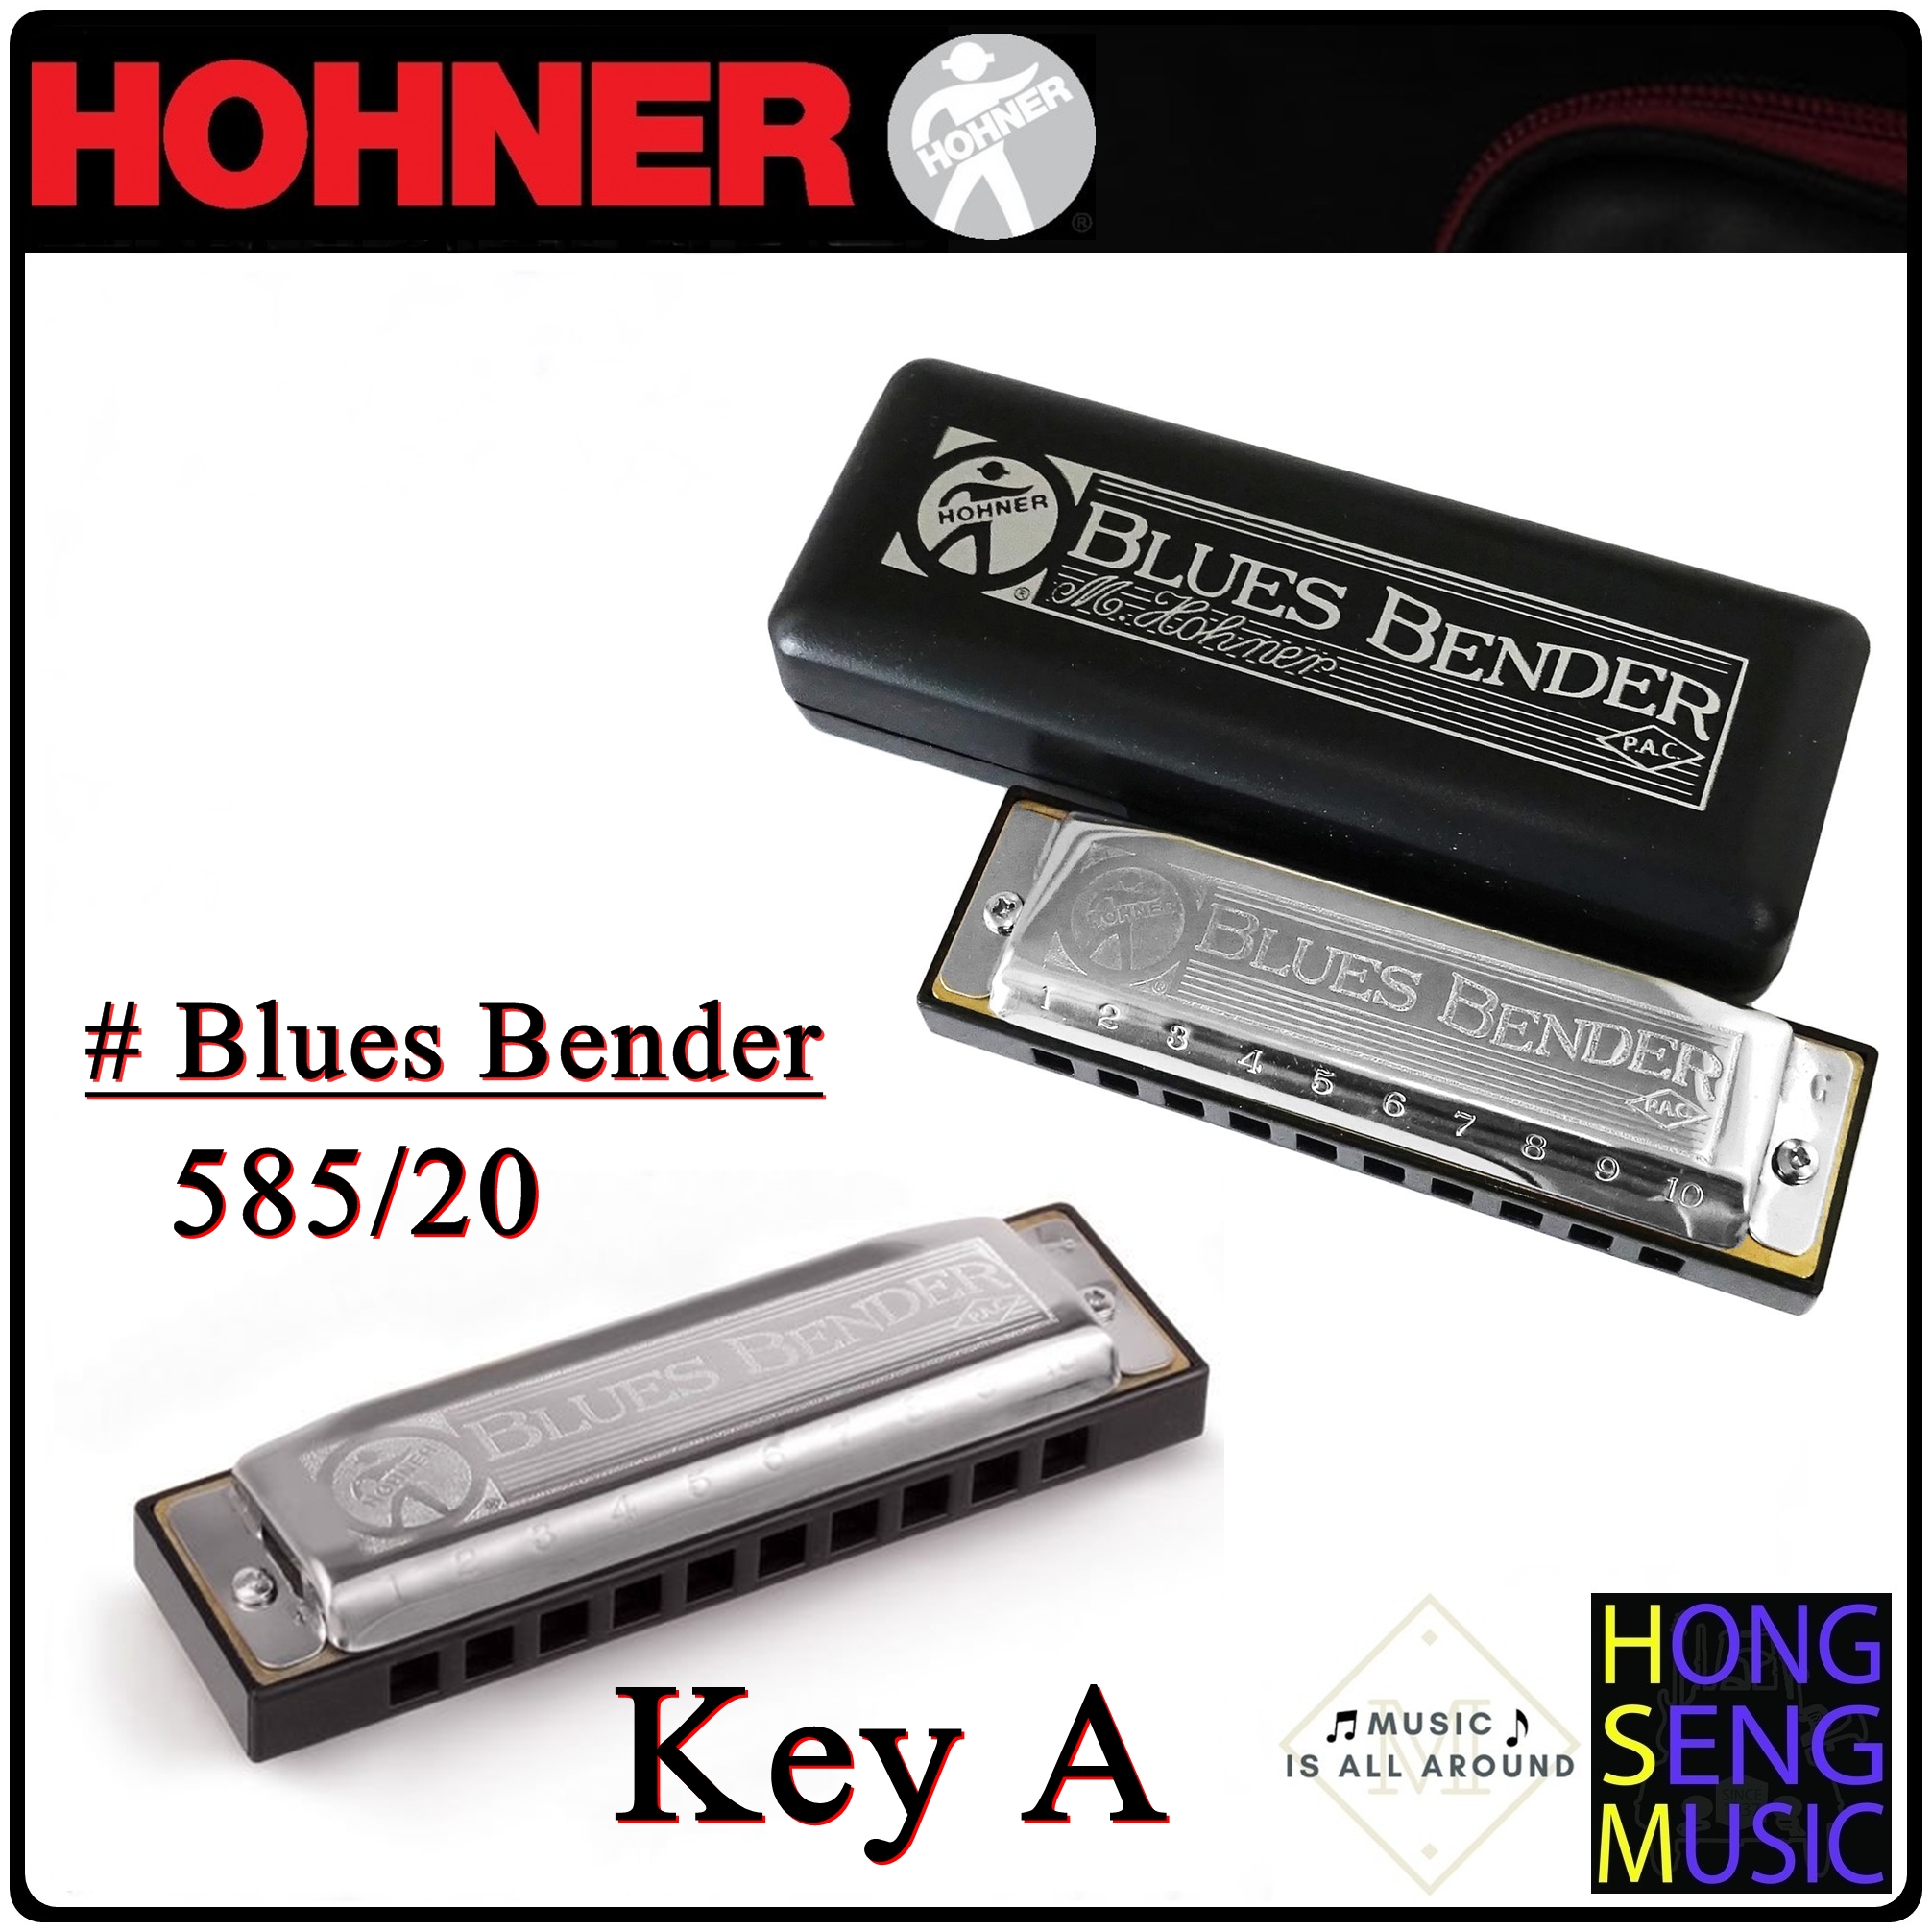 ฮาร์โมนิก้า (เม้าท์ออร์แกน) Hohner รุ่น Blues Bender Harmonica 585/20 Key A